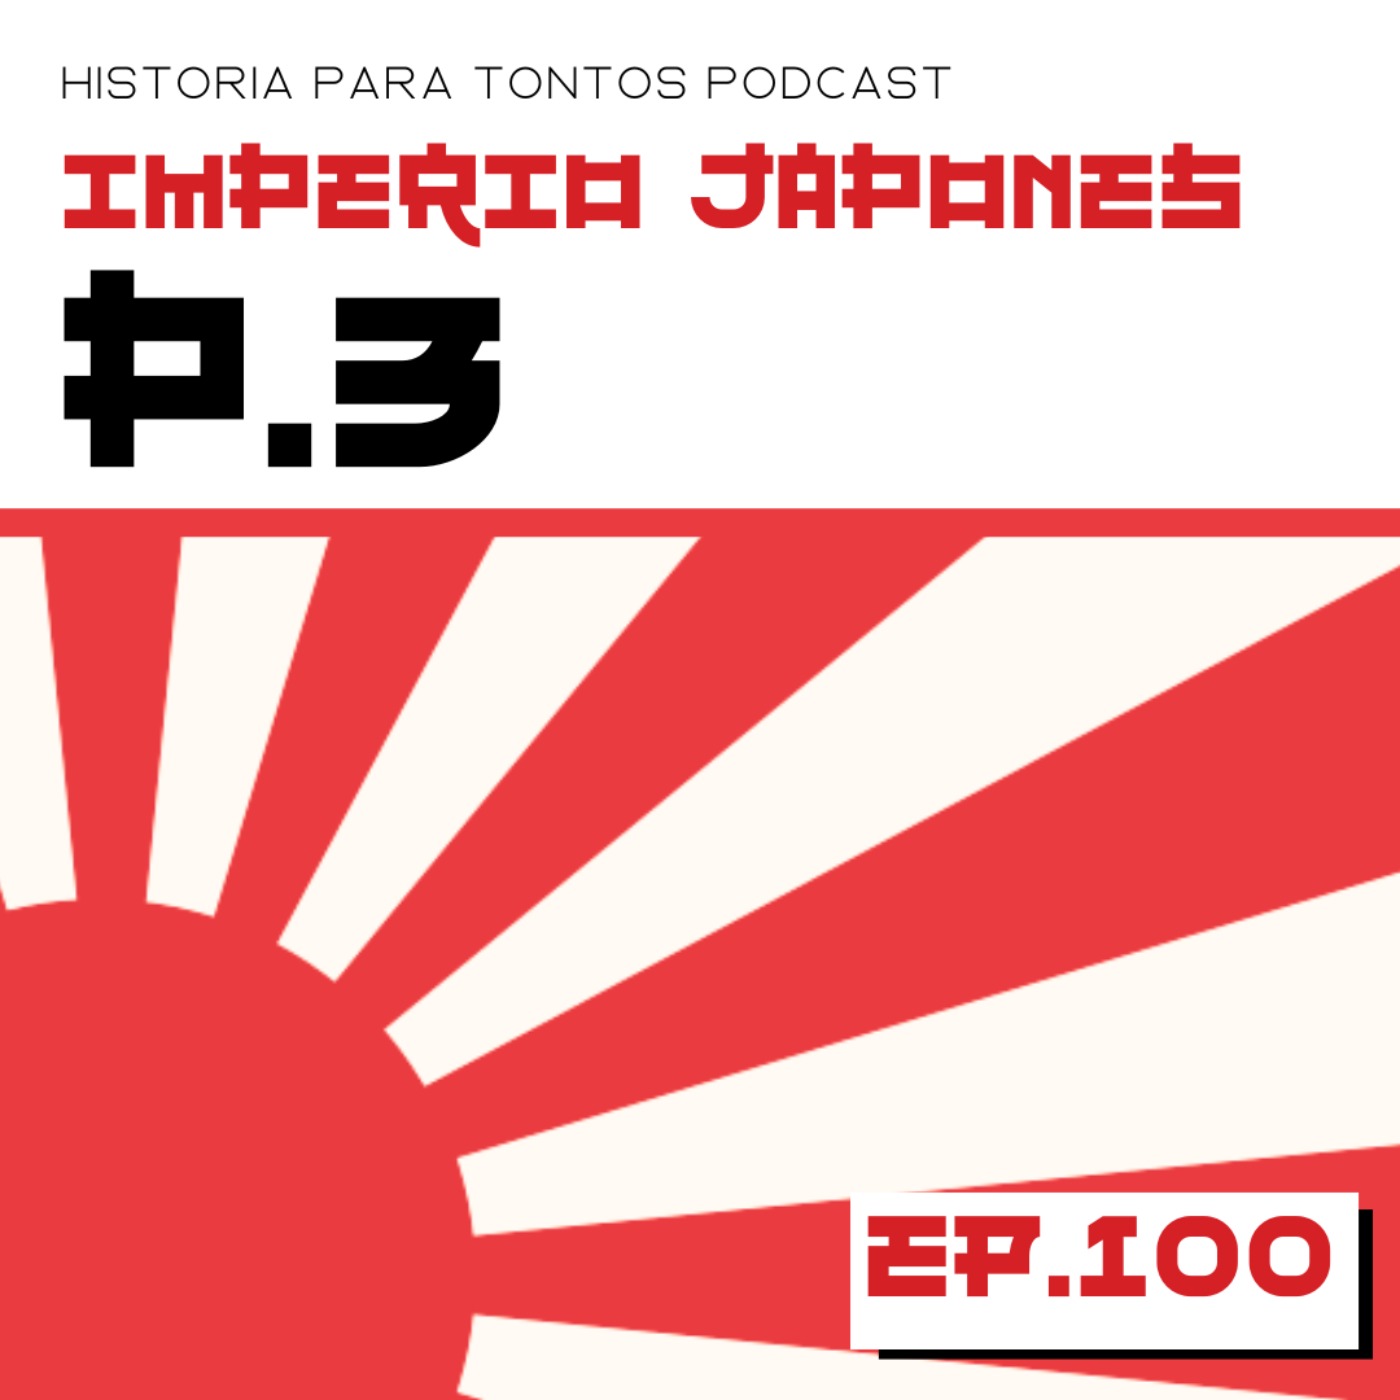 Imperio Japones P.3 - Historia para tontos Podcast- Ep# 100